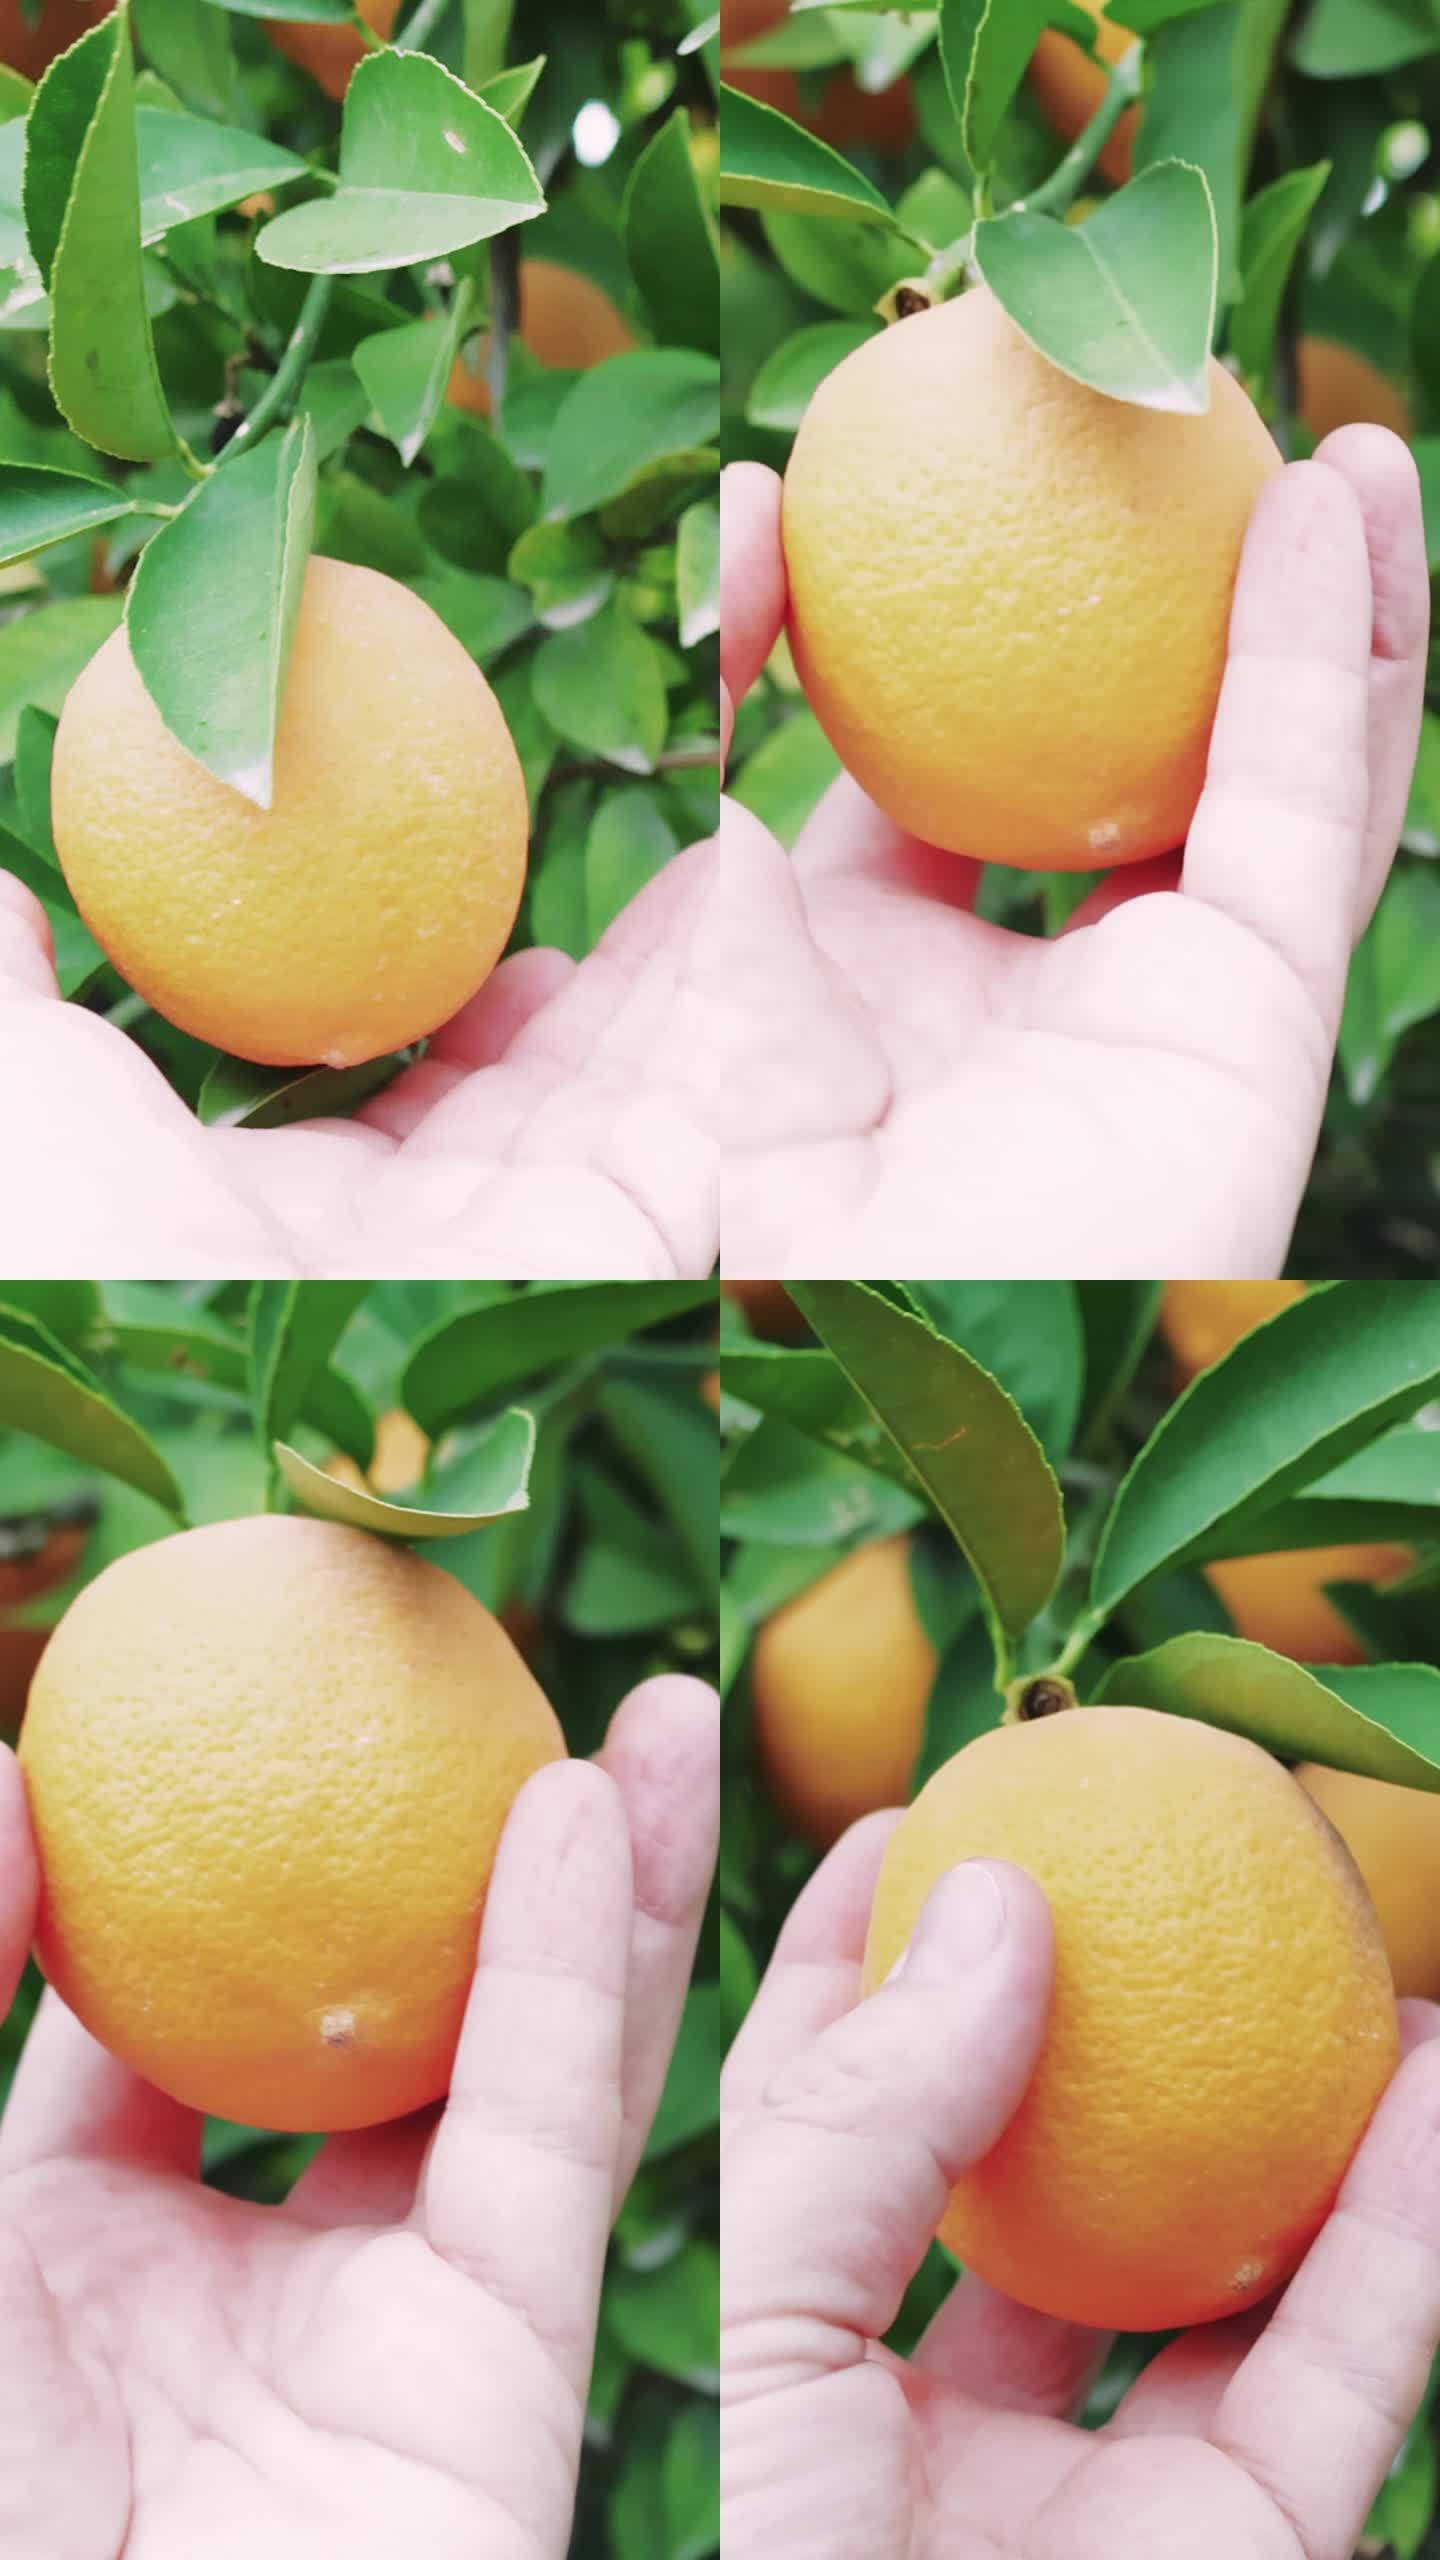 手摘成熟的柠檬为有机食品准备。花园中的柠檬树，展示有机食品成分。采摘柑橘为有机食品配方，自然新鲜